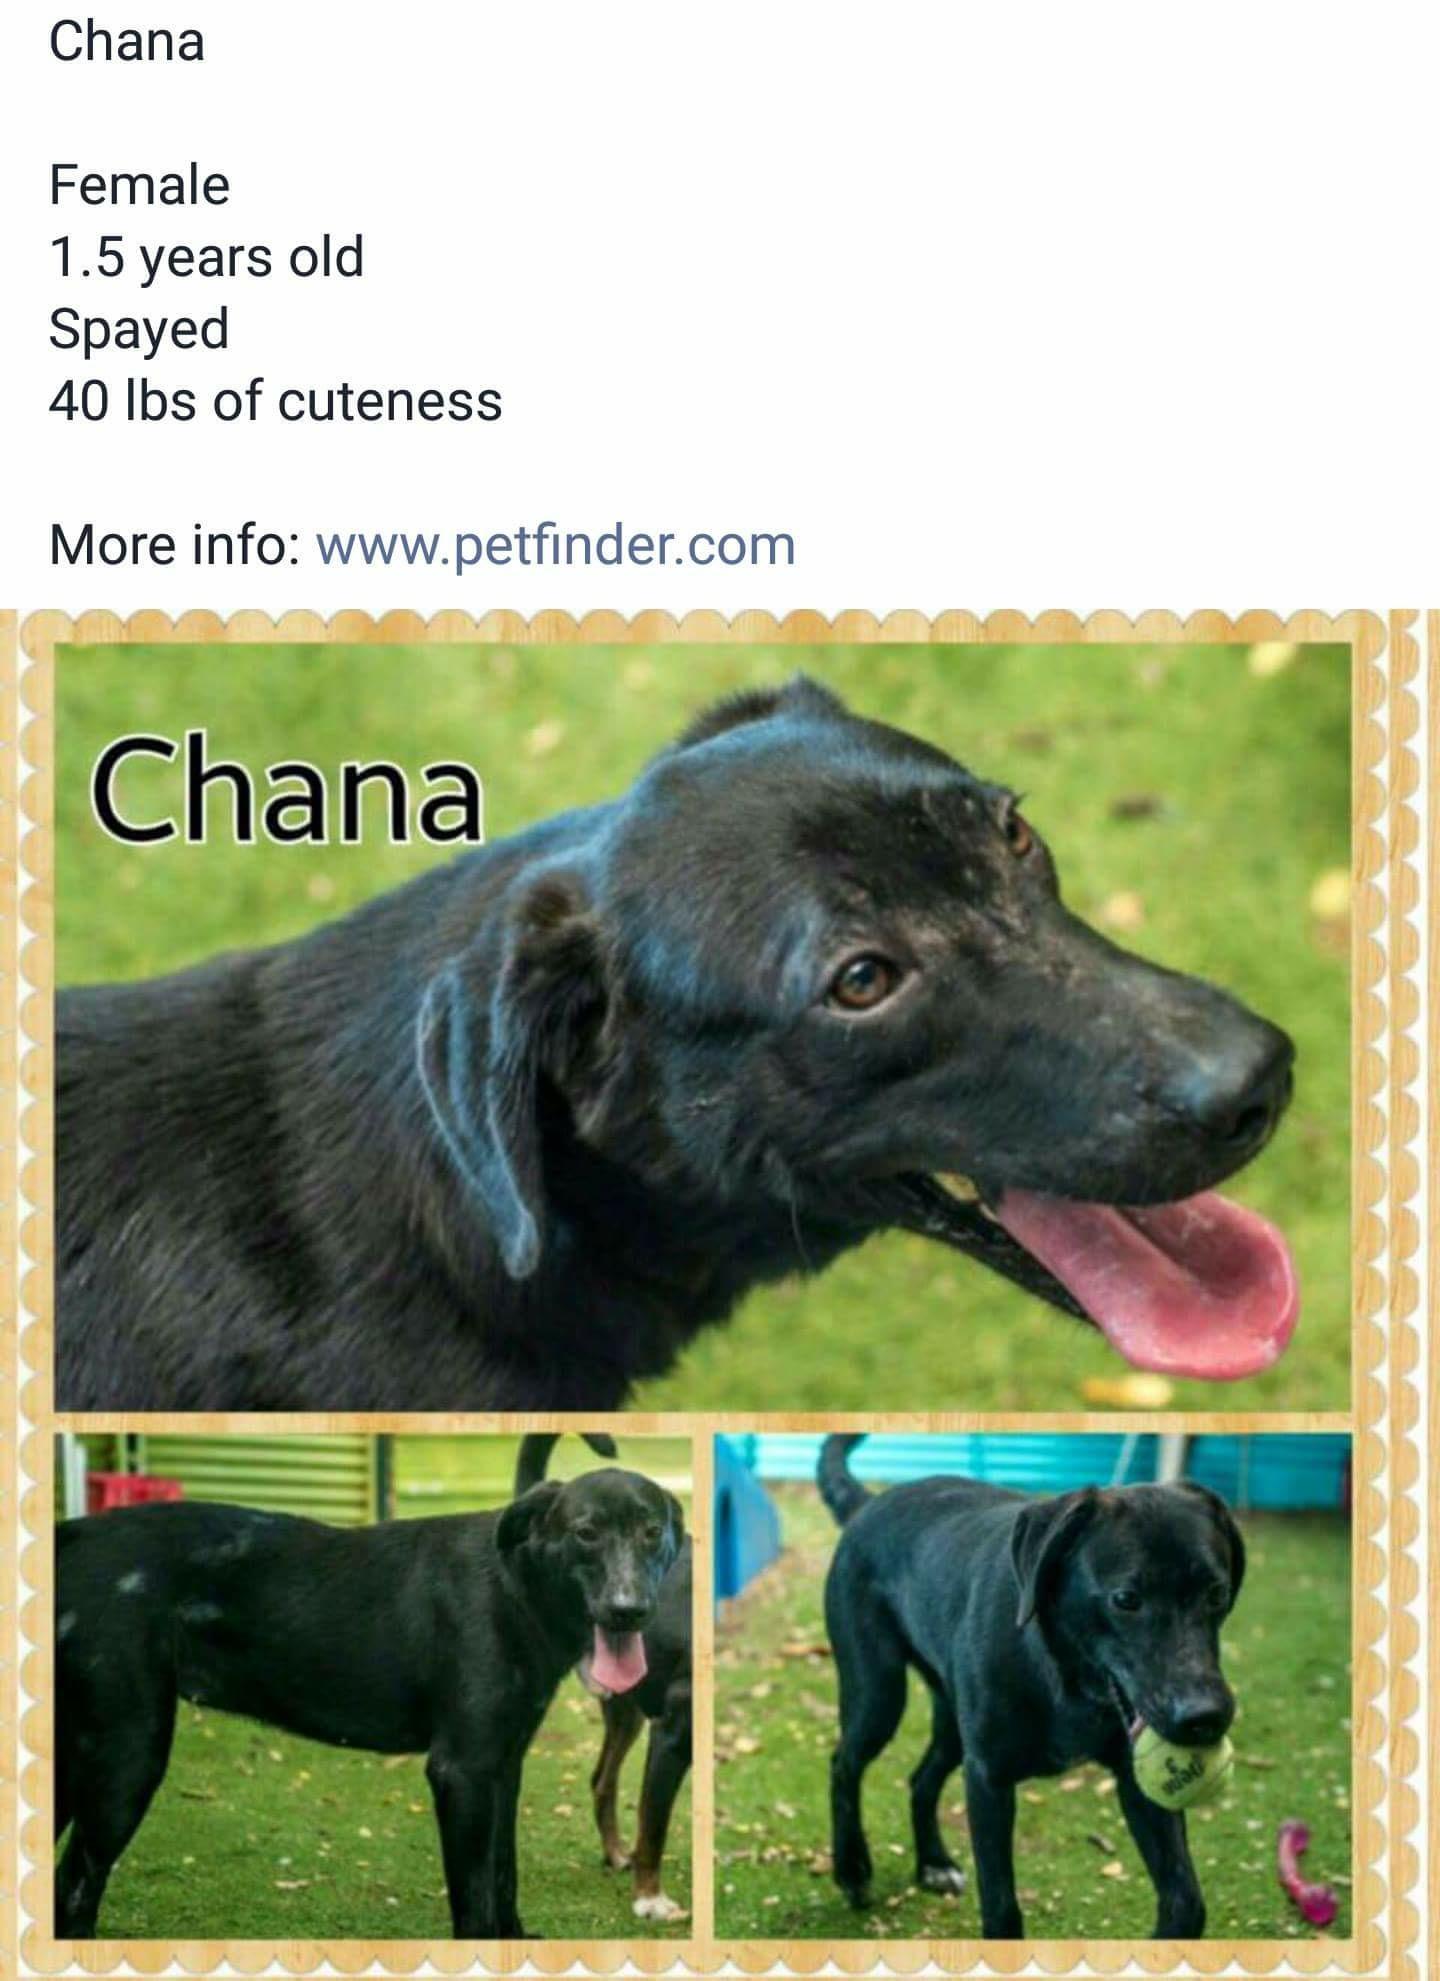 Chana detail page